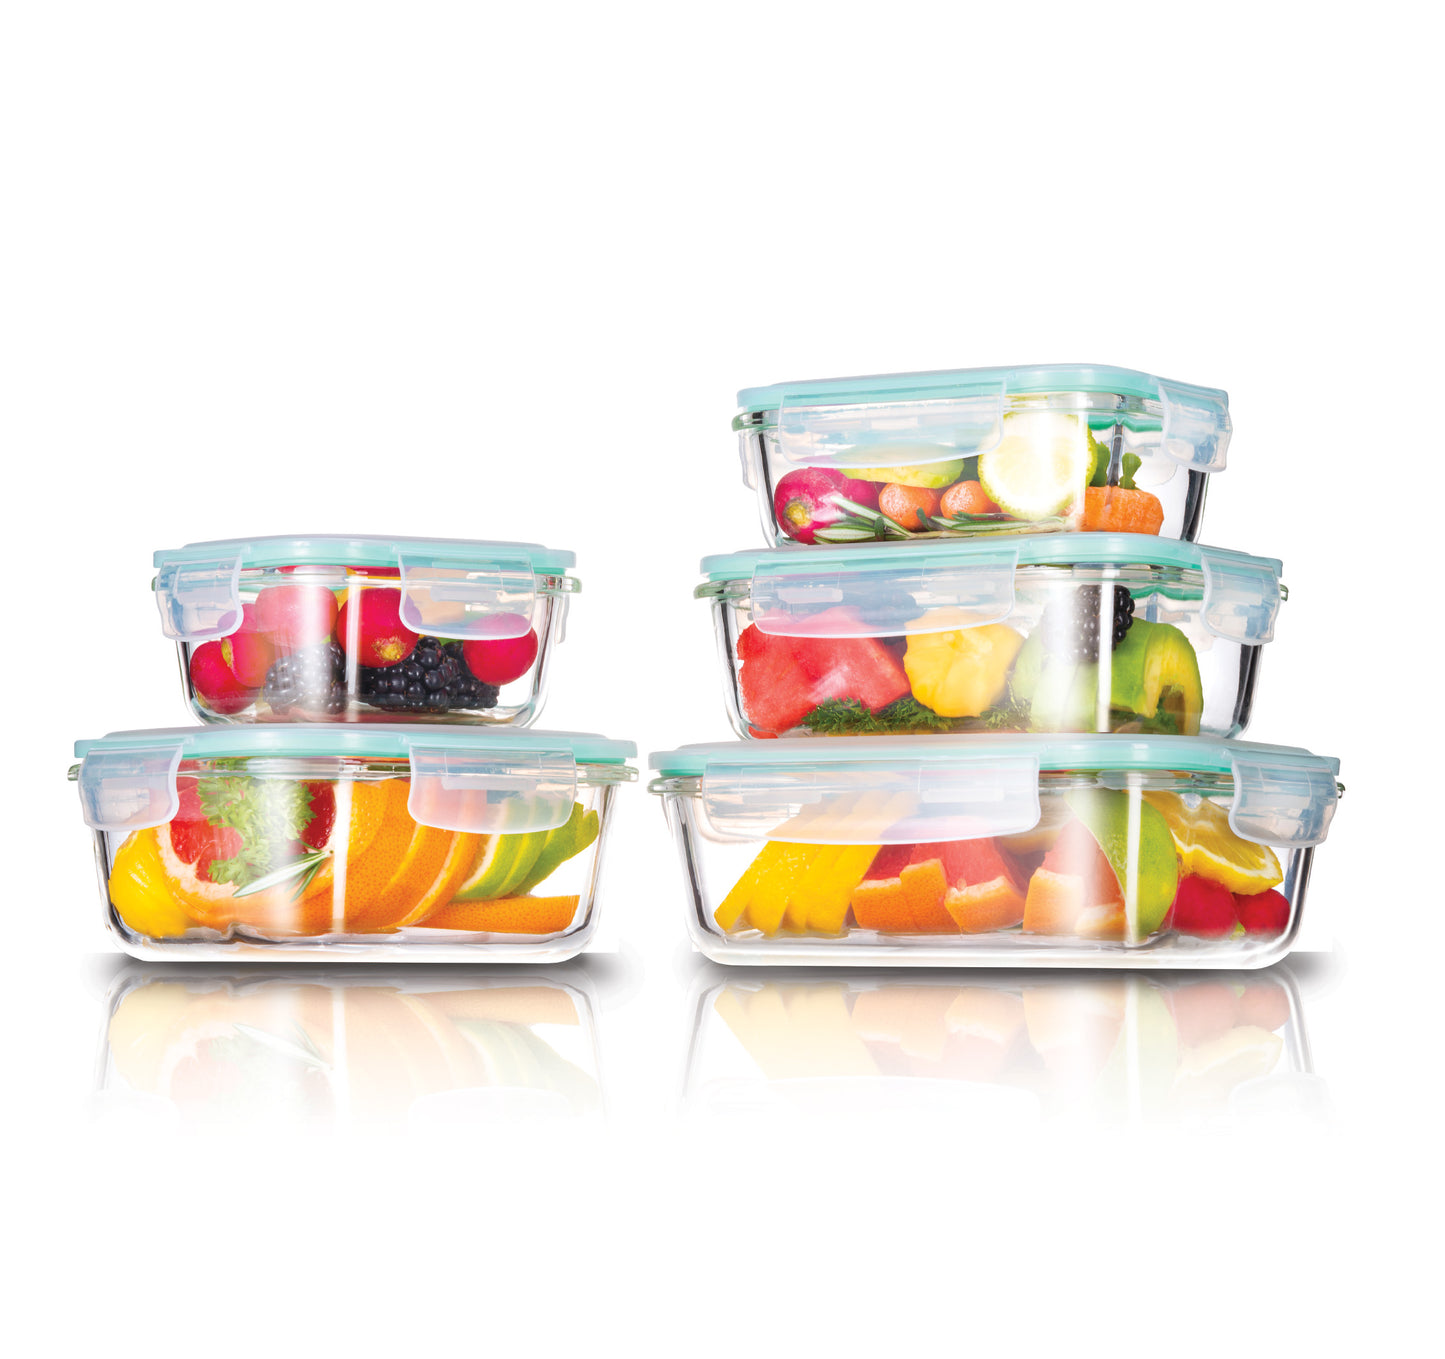 10pc Westinghouse Glass Food Storage Set - 370ml, 640ml, 1050ml, 320ml & 800ml